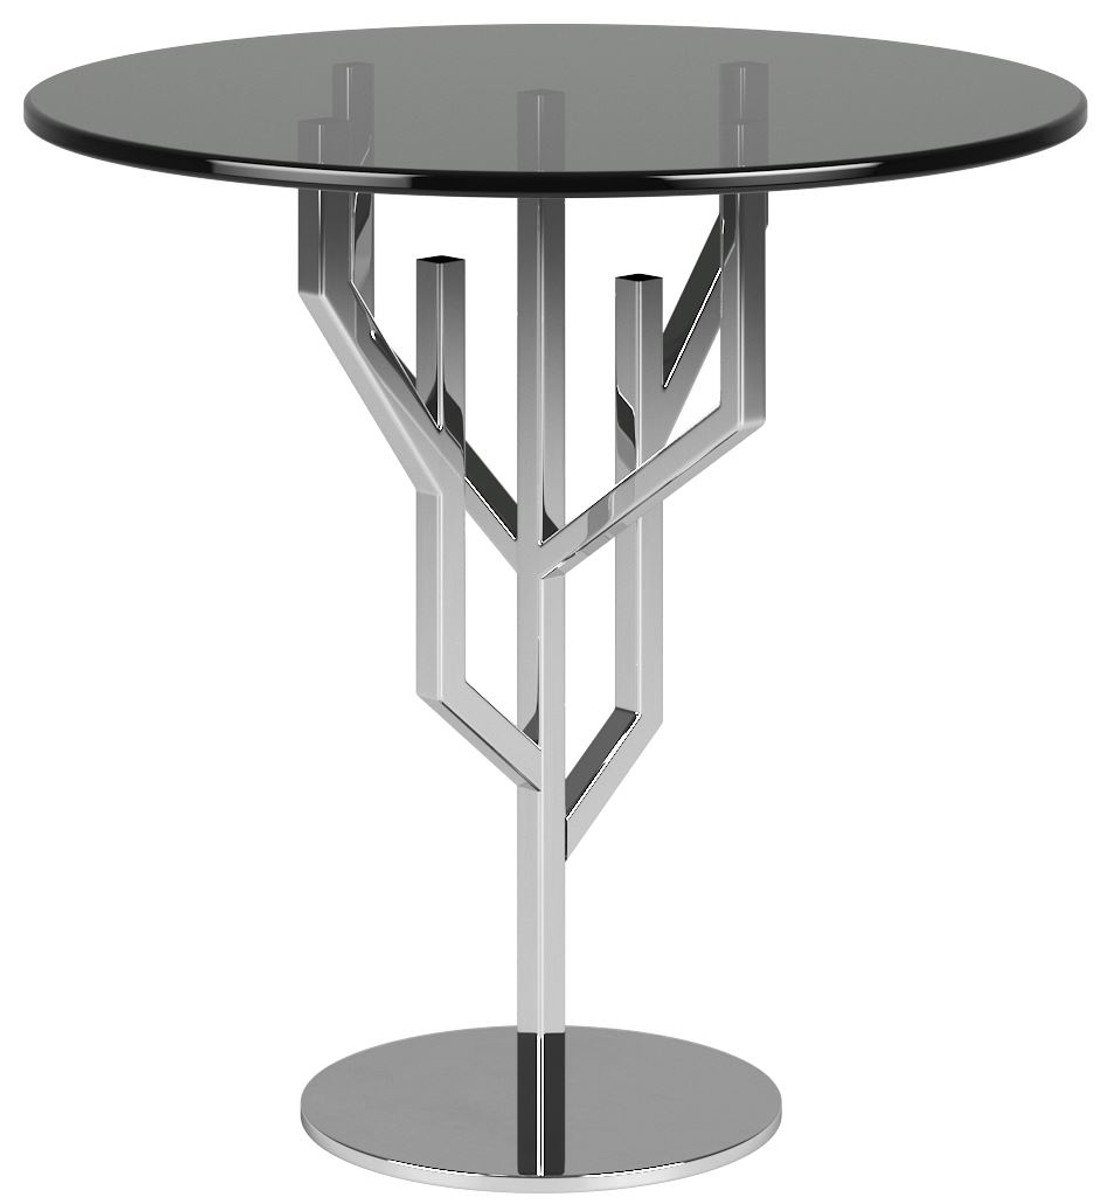 Casa Padrino Beistelltisch Luxus Beistelltisch Grau / Silber Ø 45 x H. 58 cm - Edler runder Tisch mit Glasplatte - Luxus Möbel